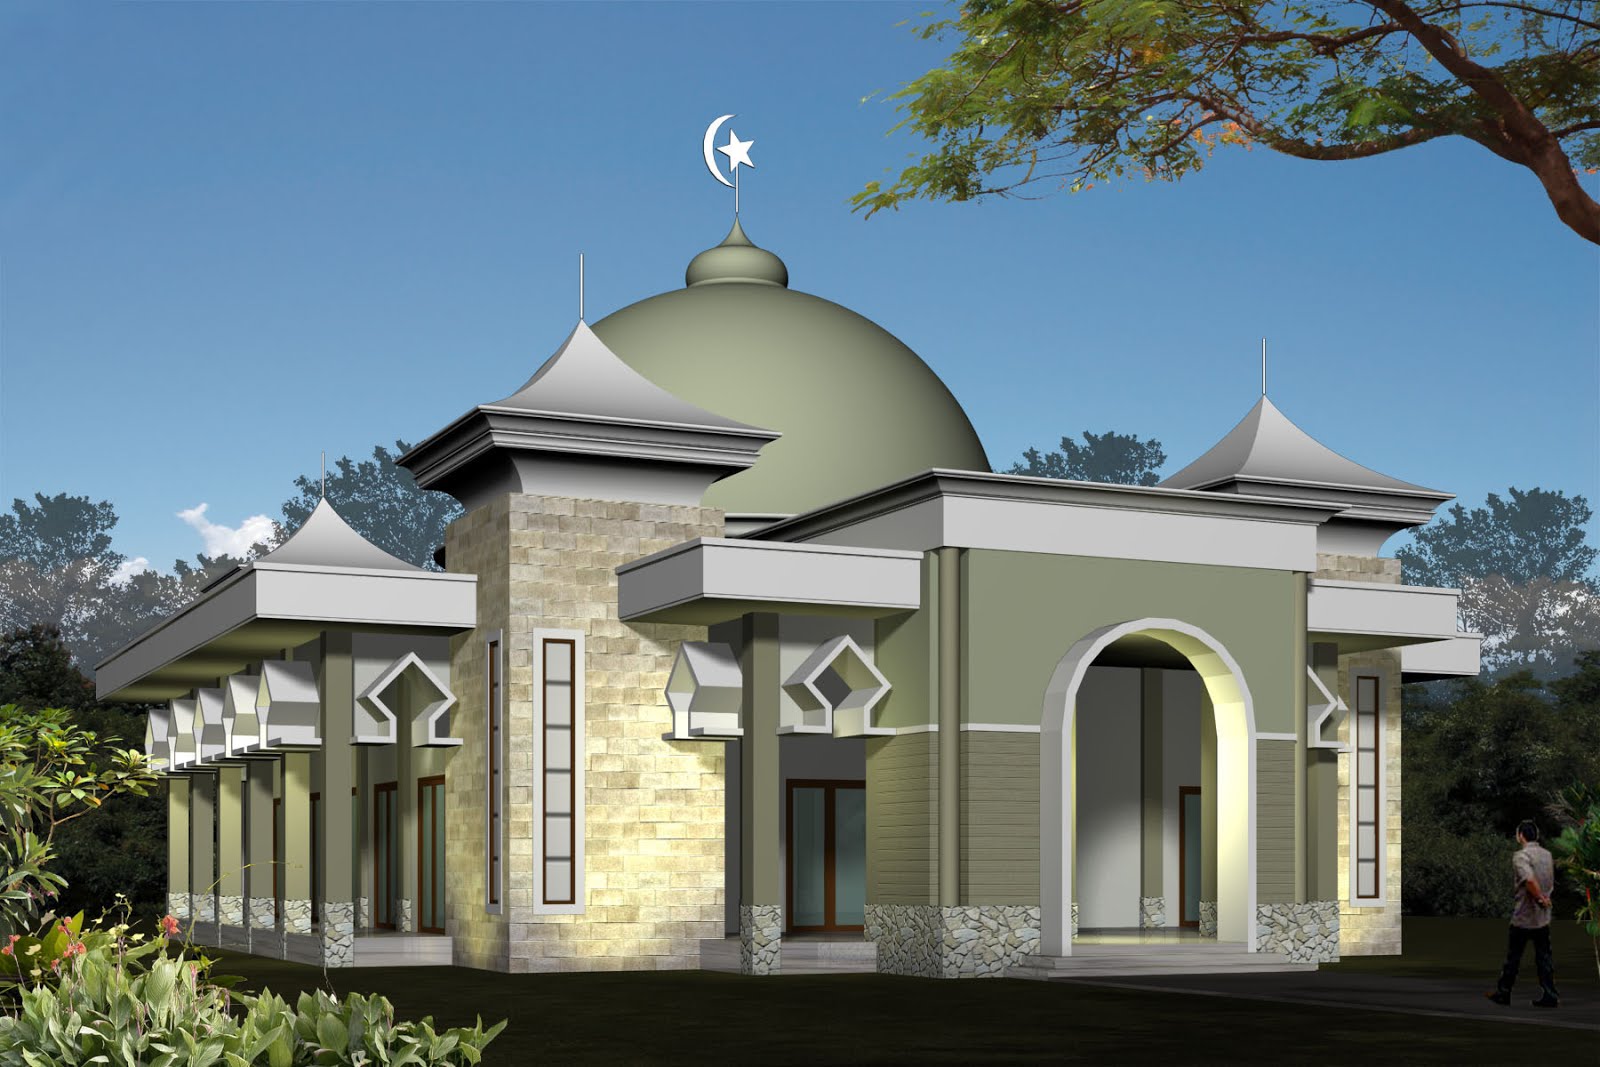 30 Model Masjid Minimalis Dengan Model Masjid Modern dari Seluruh Dunia